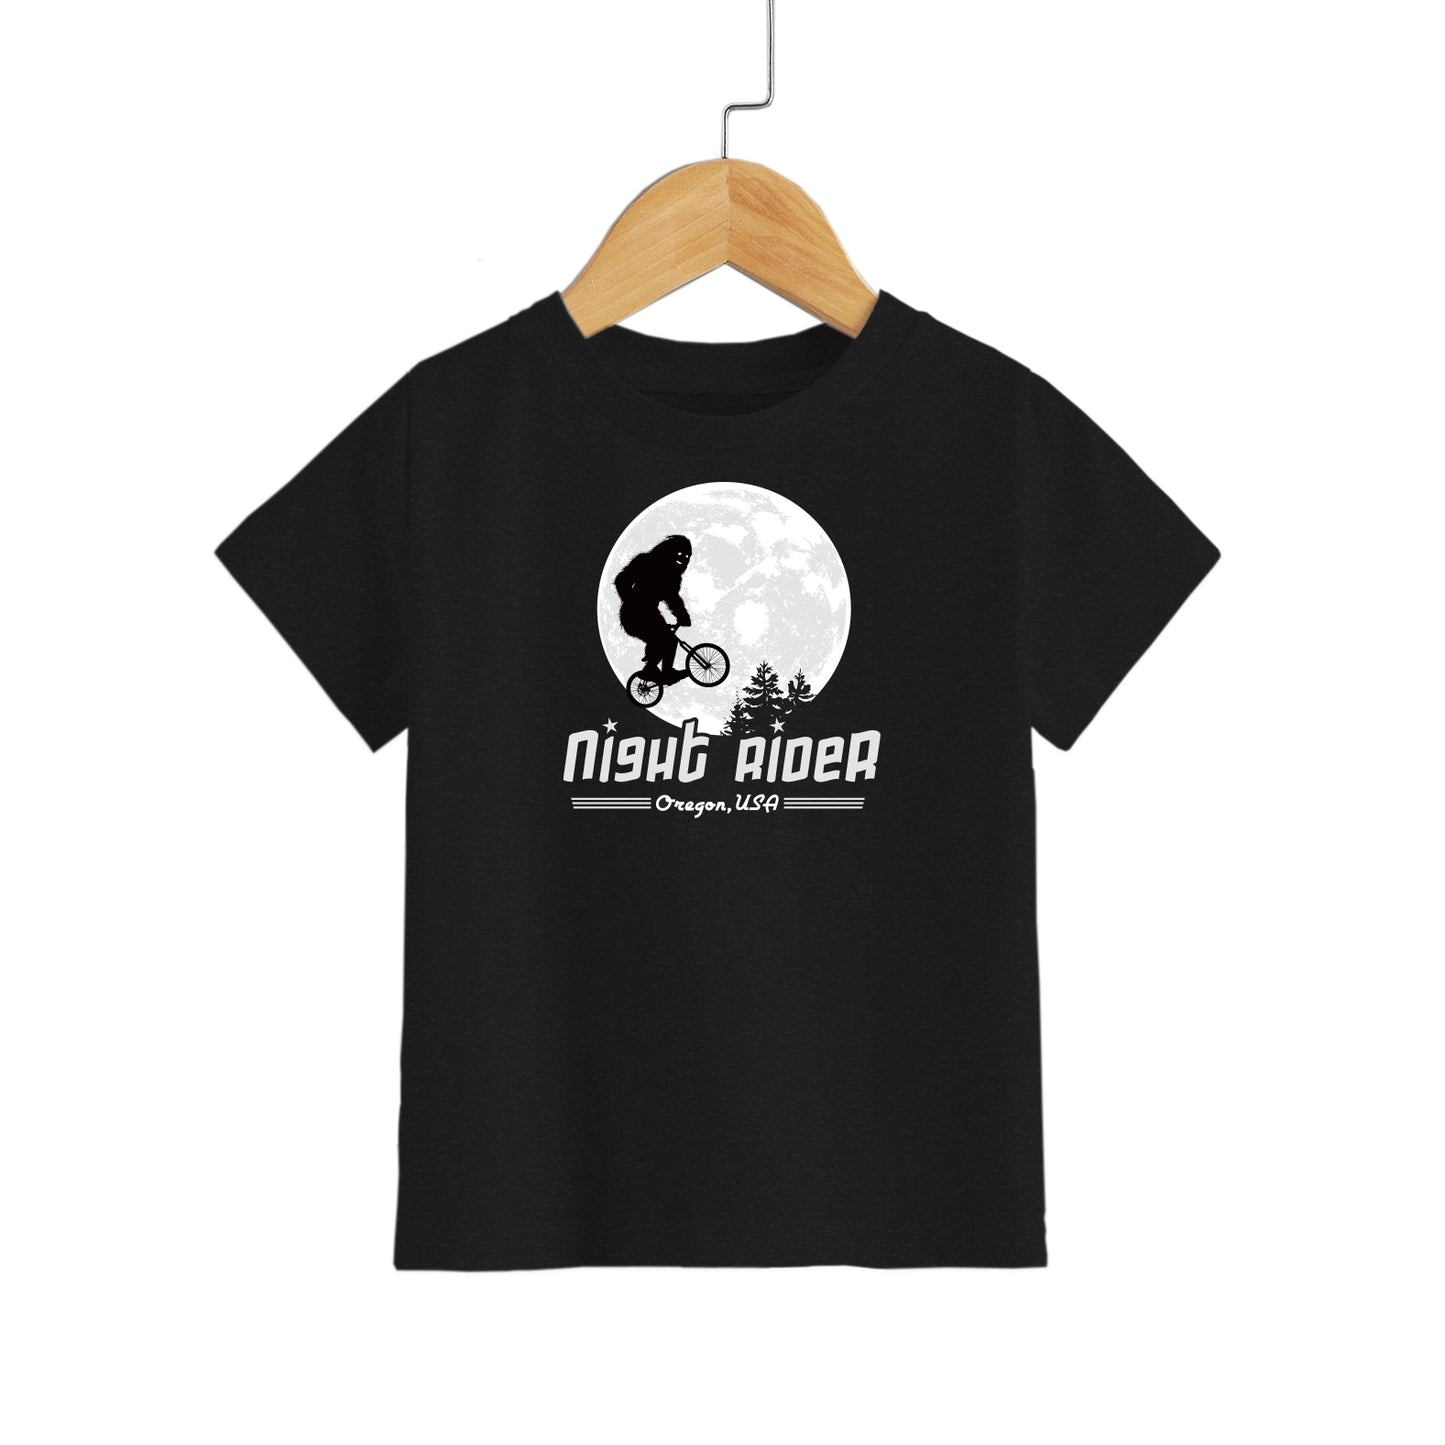 Night Rider Oregon | Youth T-Shirt